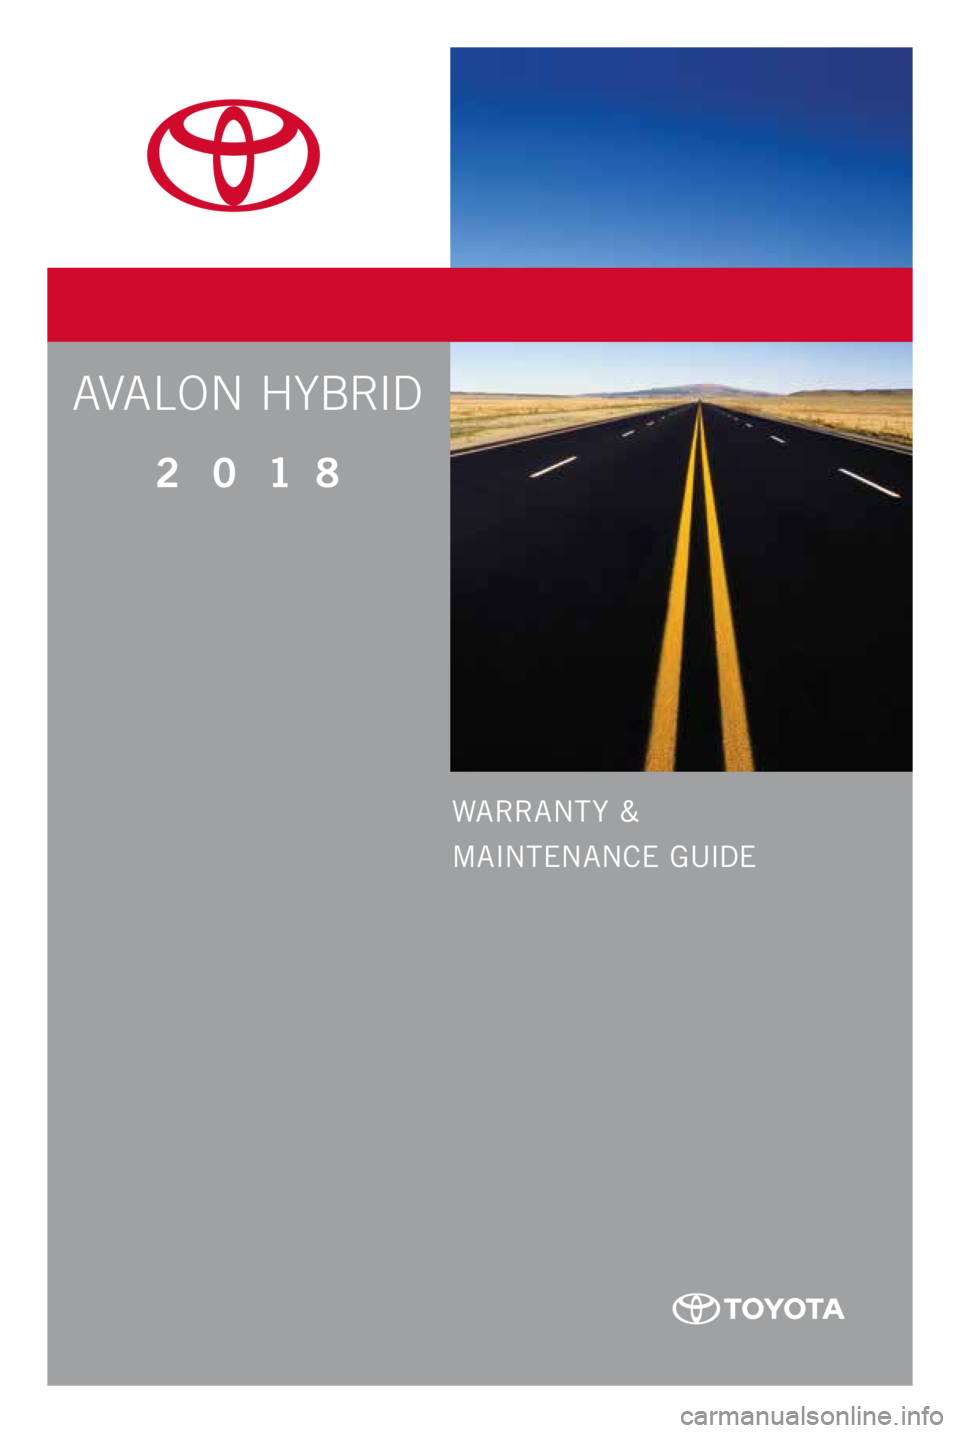 TOYOTA AVALON HYBRID 2018  Warranties & Maintenance Guides (in English) WARRANT Y &
MAINTENANCE GUIDE
Printed  in  U. S. A . 5/ 17
17-TCS-09992
2 0 1 8     
www.toyota.comAVALON HYBRID 